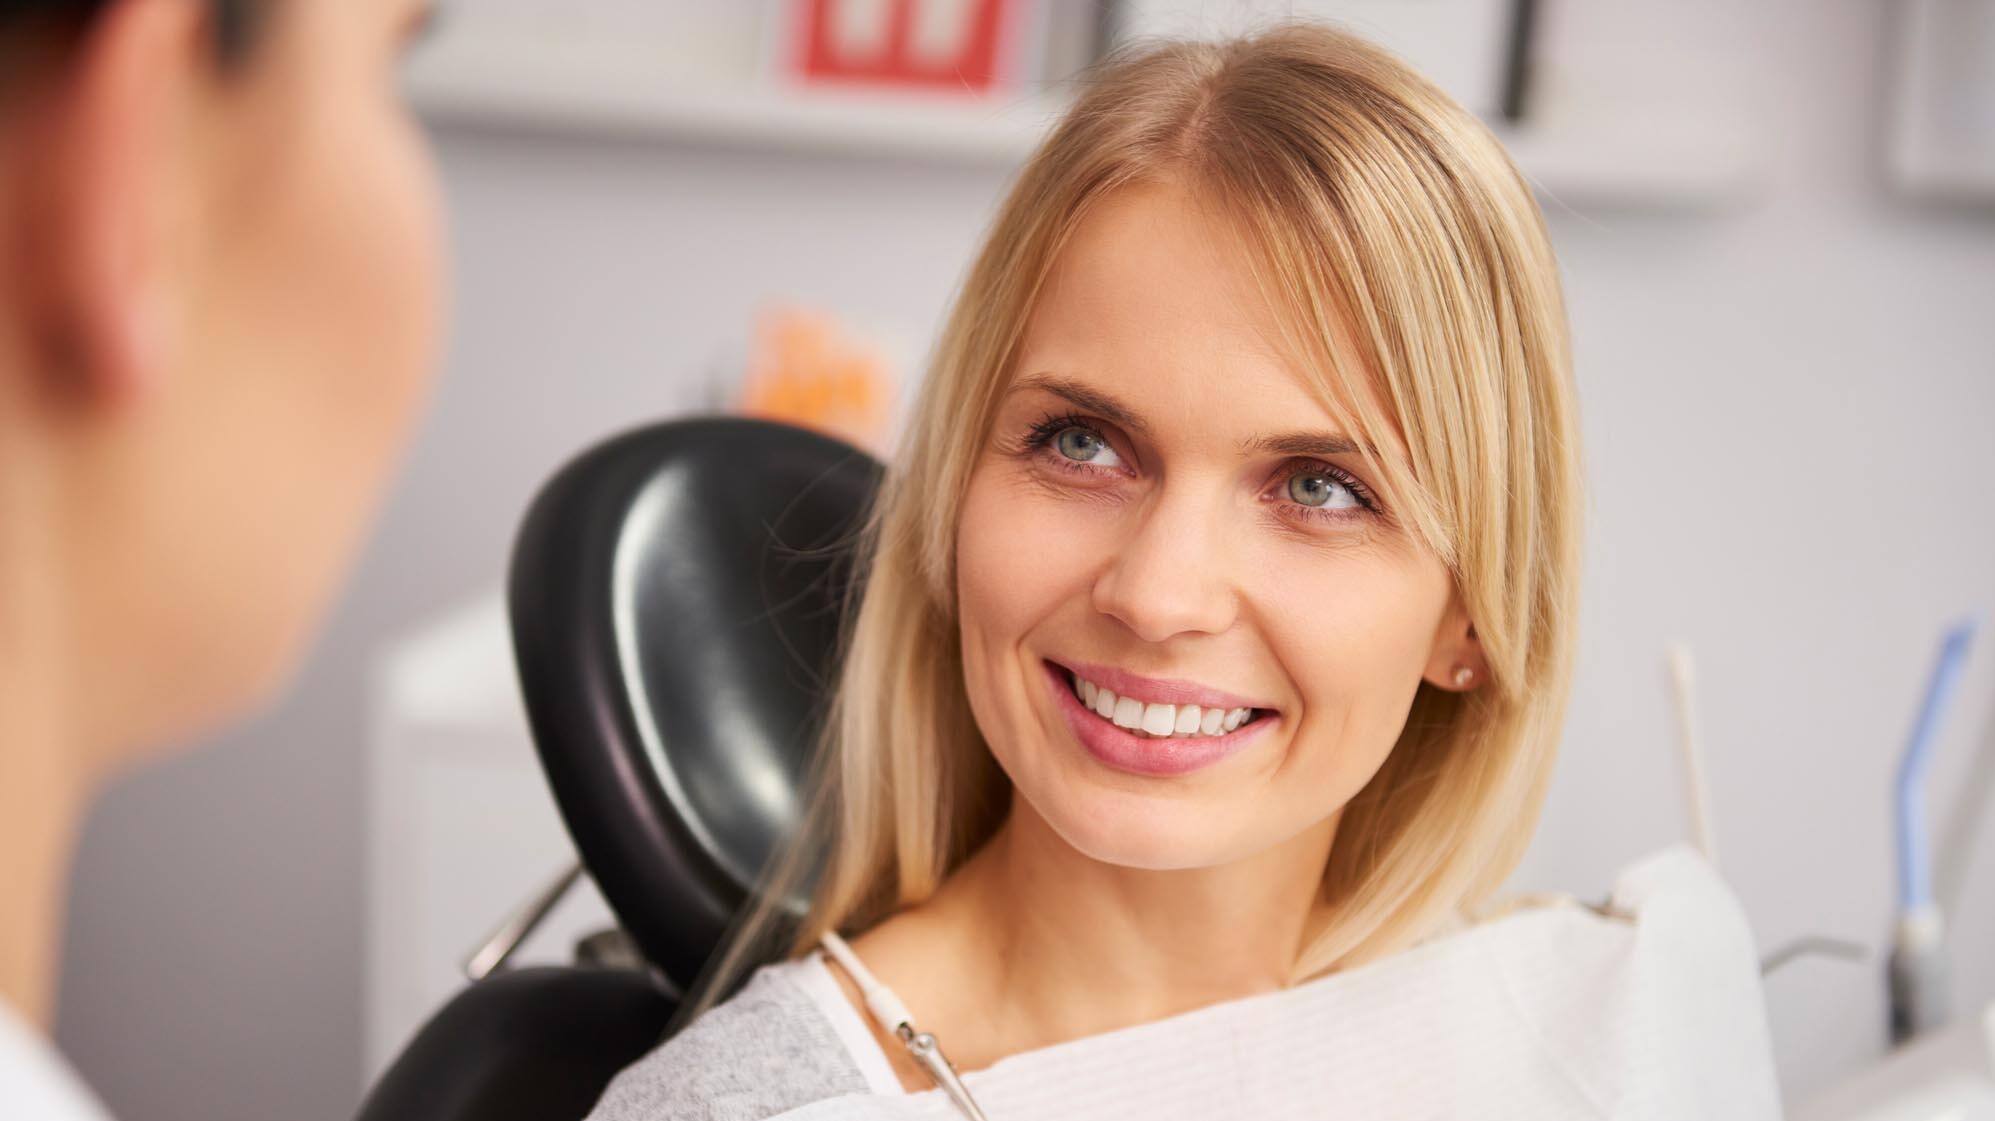 Lachende Frau auf einem Behandlungsstuhl beim Zahnarzt. zahnarzt-muehlacker-ziegenhagel-iStock-1145186546.jpg